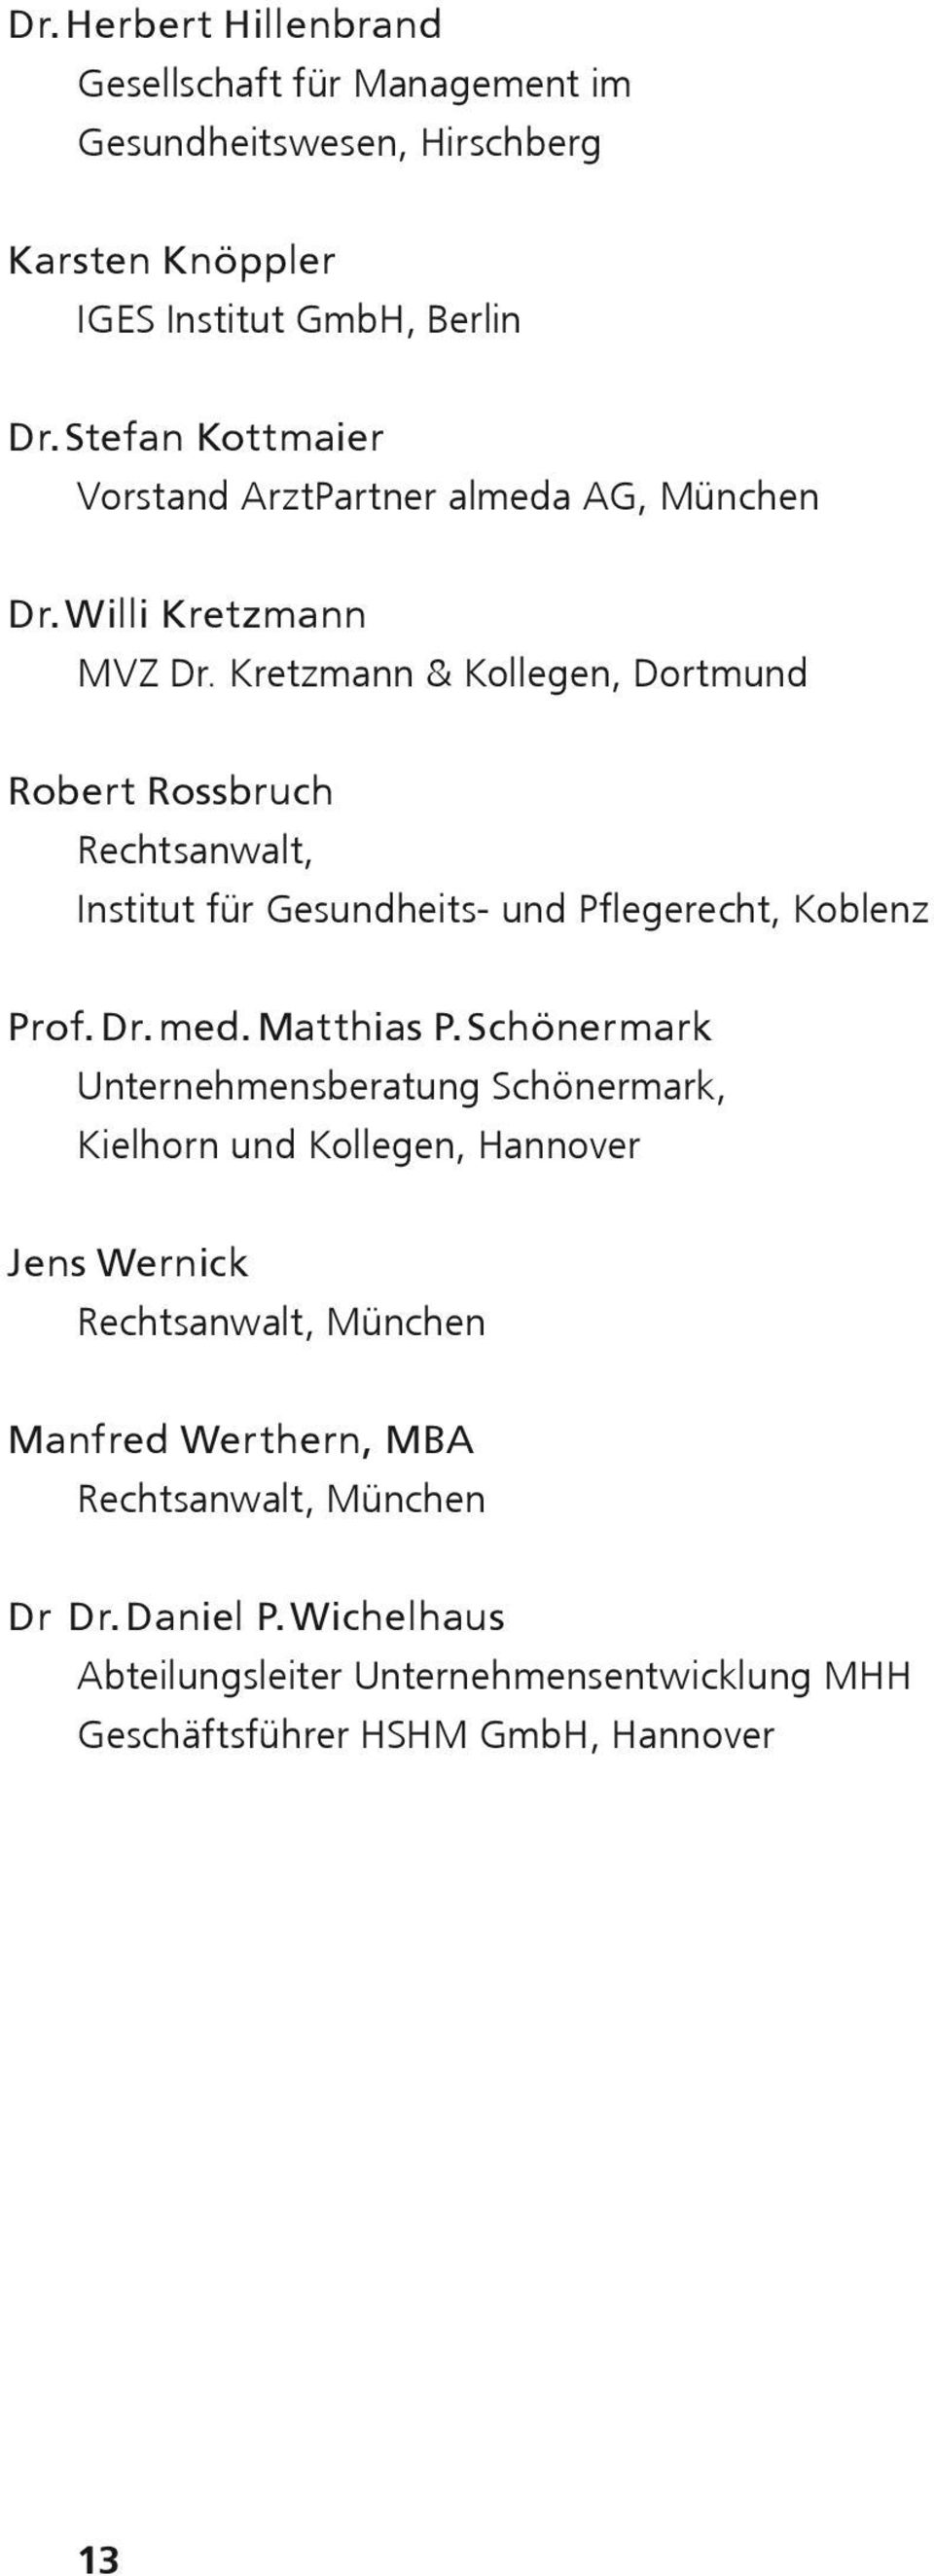 Kretzmann & Kollegen, Dortmund Robert Rossbruch Rechtsanwalt, Institut für Gesundheits- und Pflegerecht, Koblenz Prof. Dr. med. Matthias P.